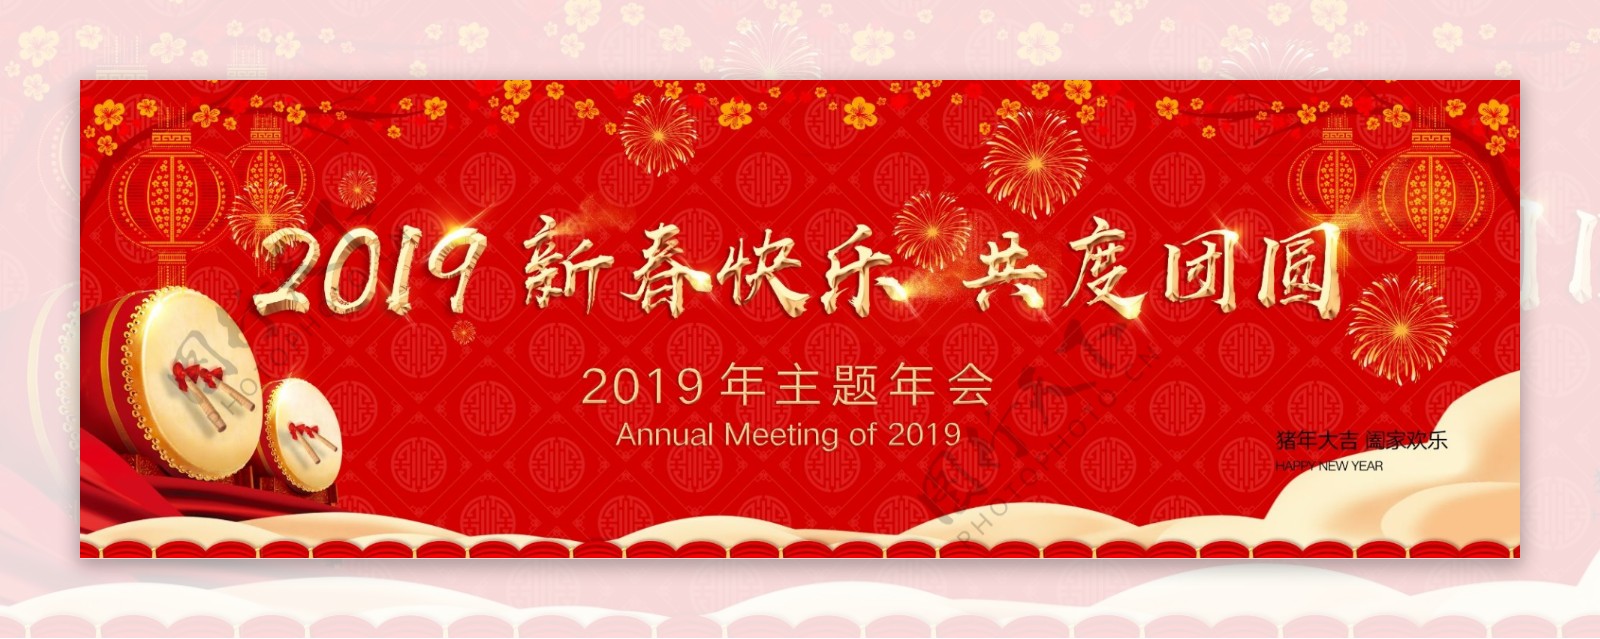 2019年新春快乐主题背景板